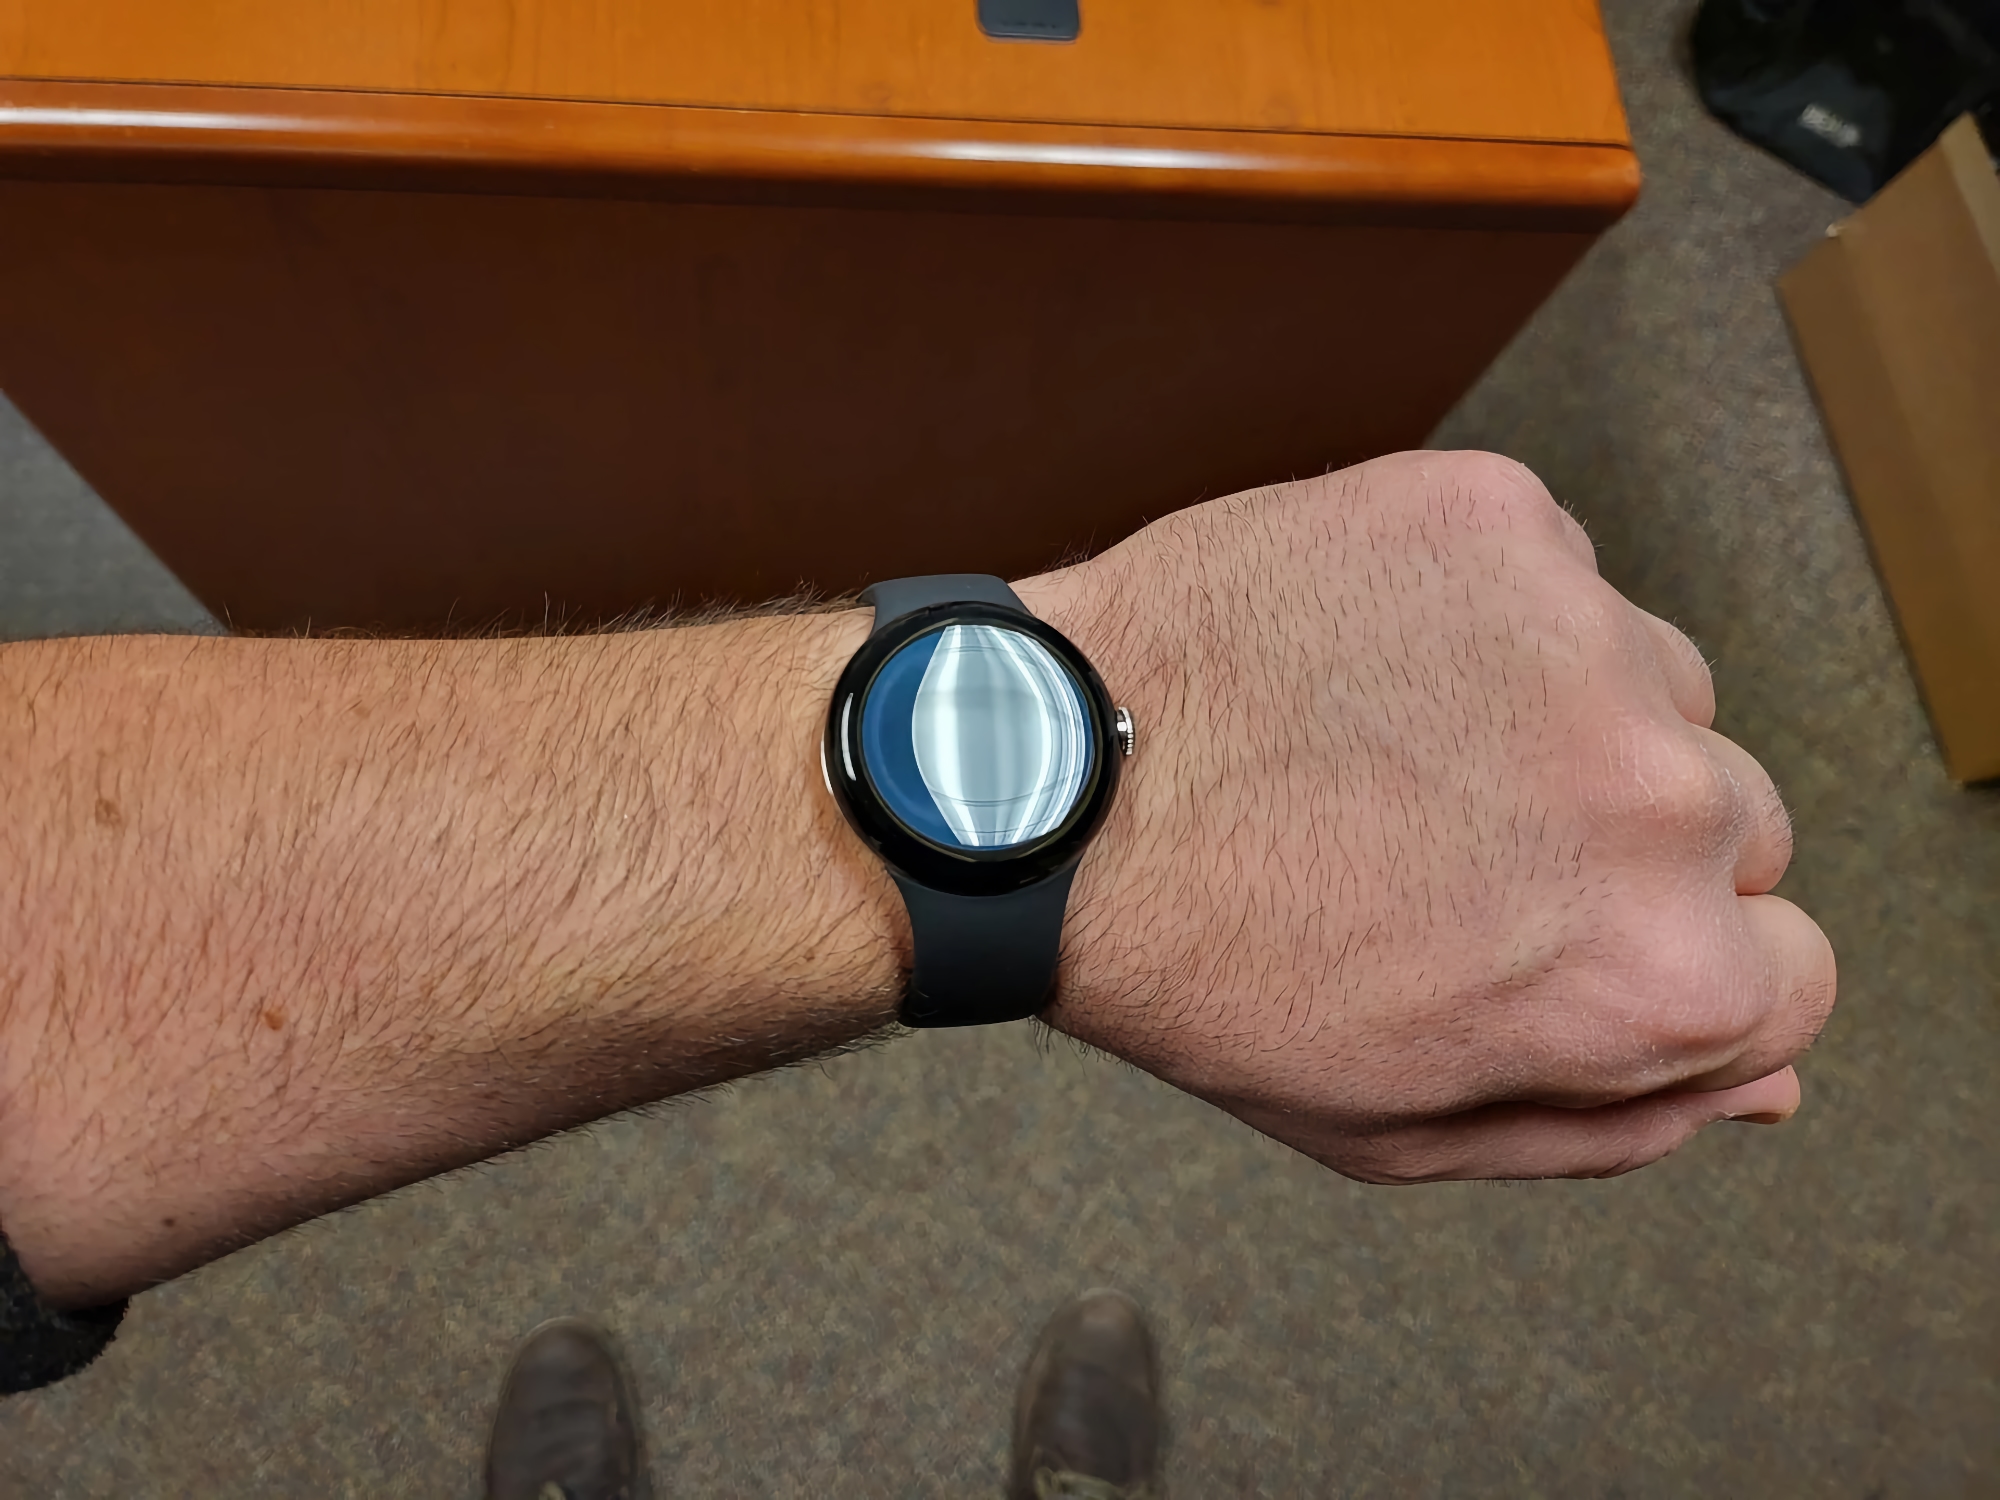 Smart Watch Google Pixel Watch erschien in neuen hochwertigen Fotos